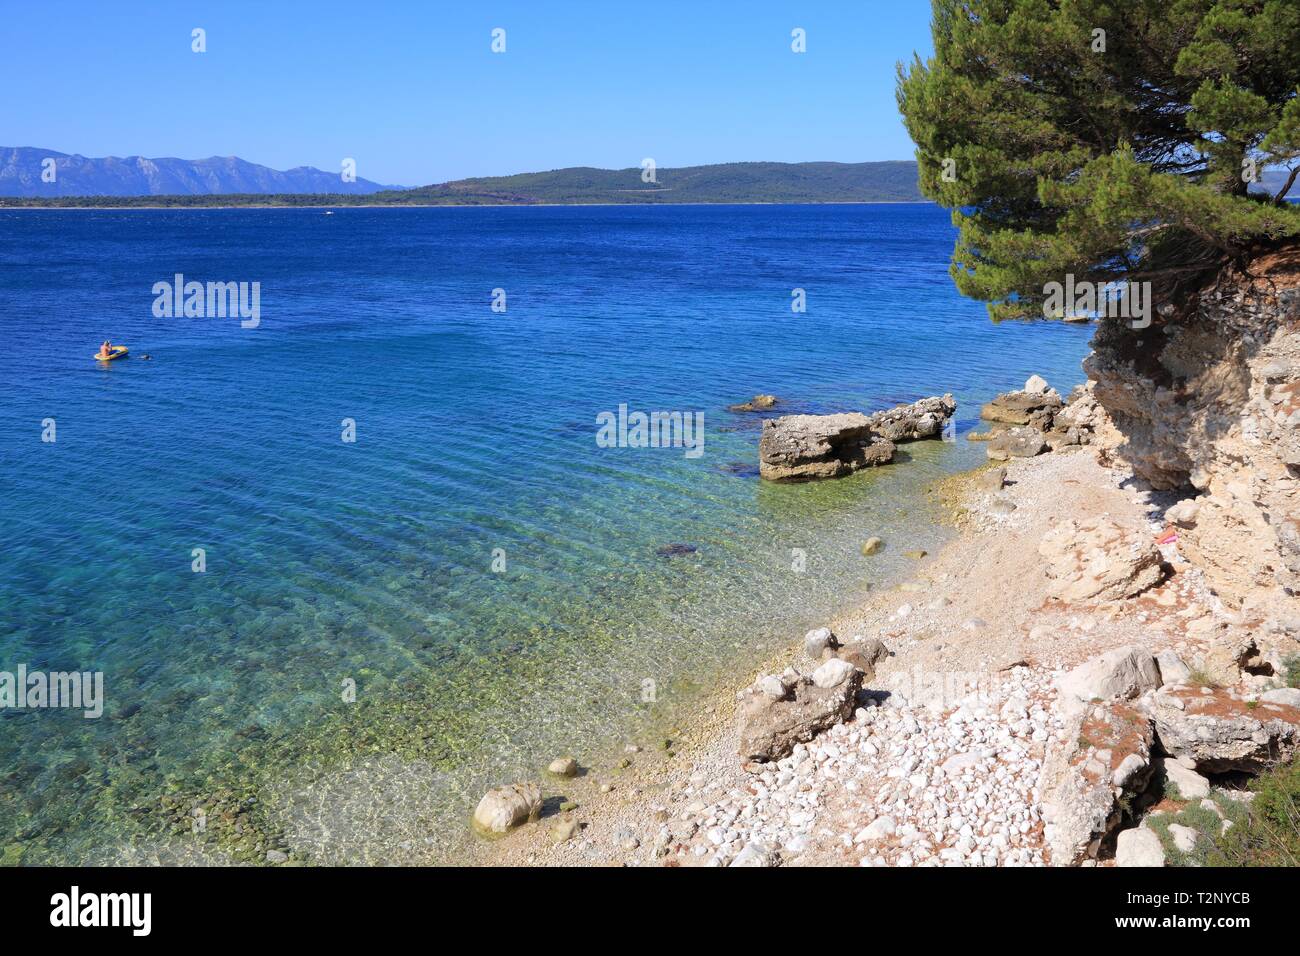 Croatia - beautiful Mediterranean coast landscape in Dalmatia. Zivogosce beach - Adriatic Sea. Stock Photo